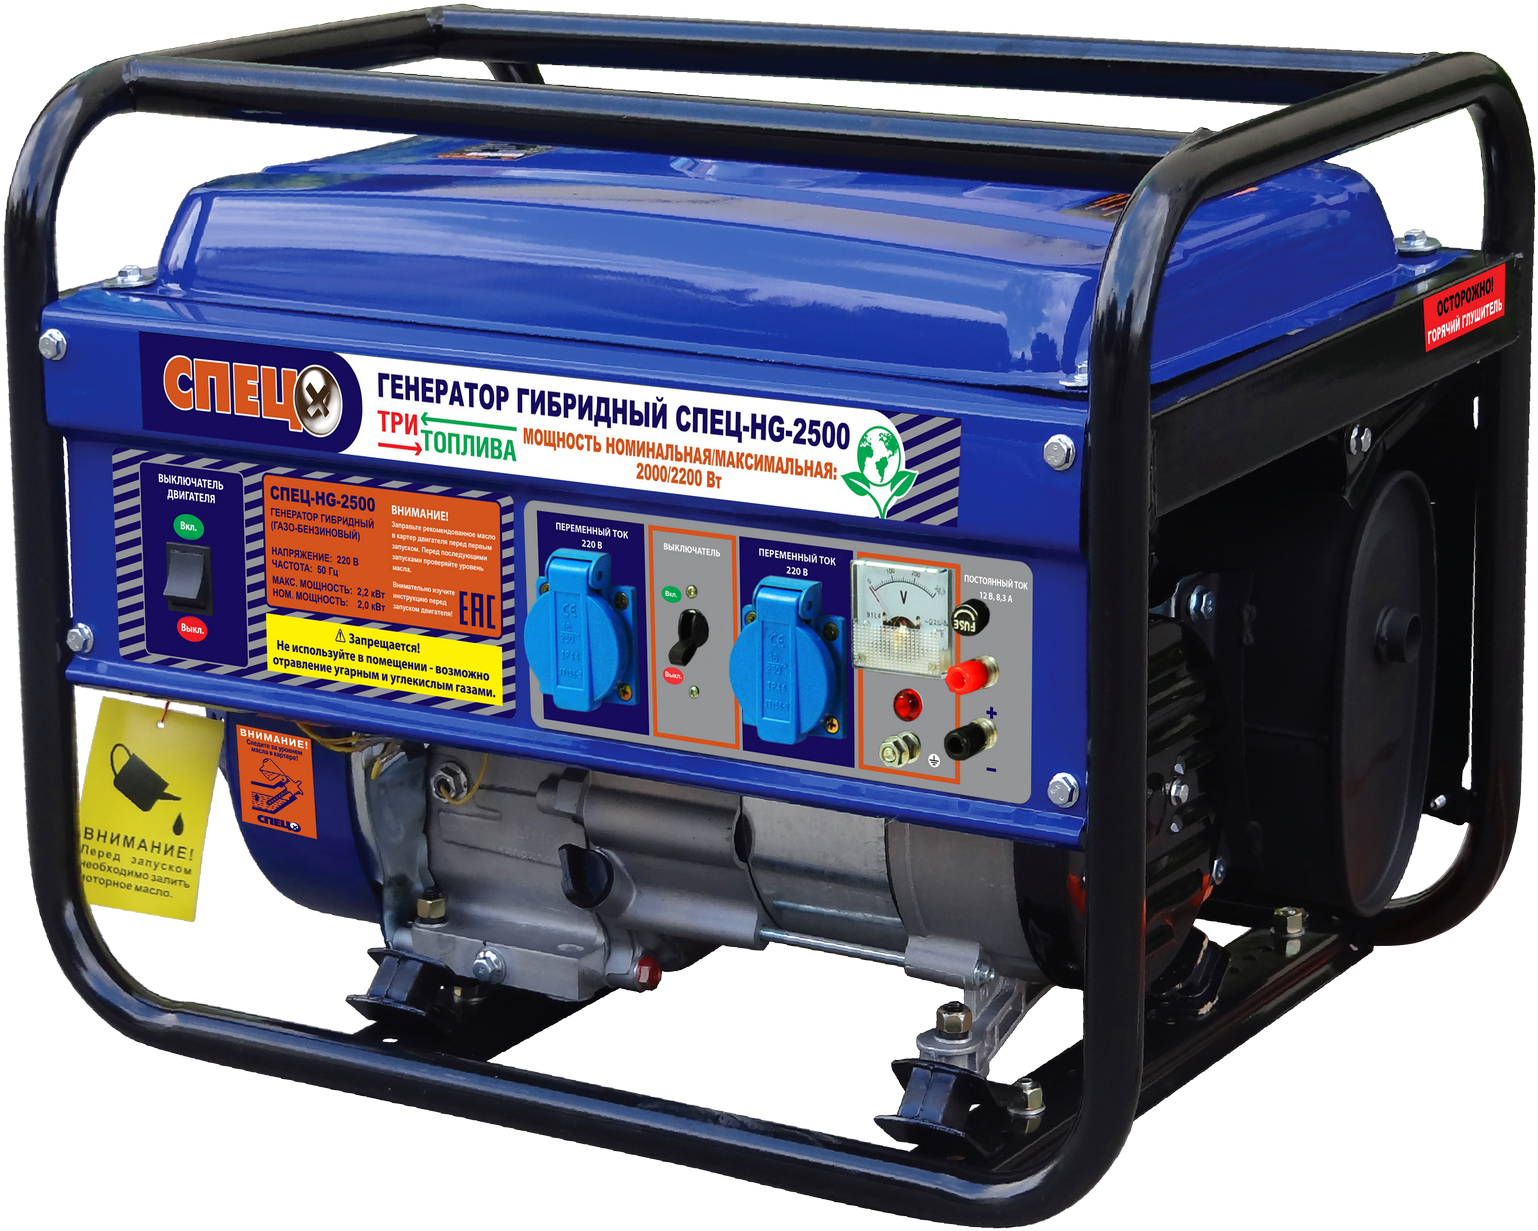 Generator - Генератор Спец Hg 2500 Clipart (1578x1254), Png Download